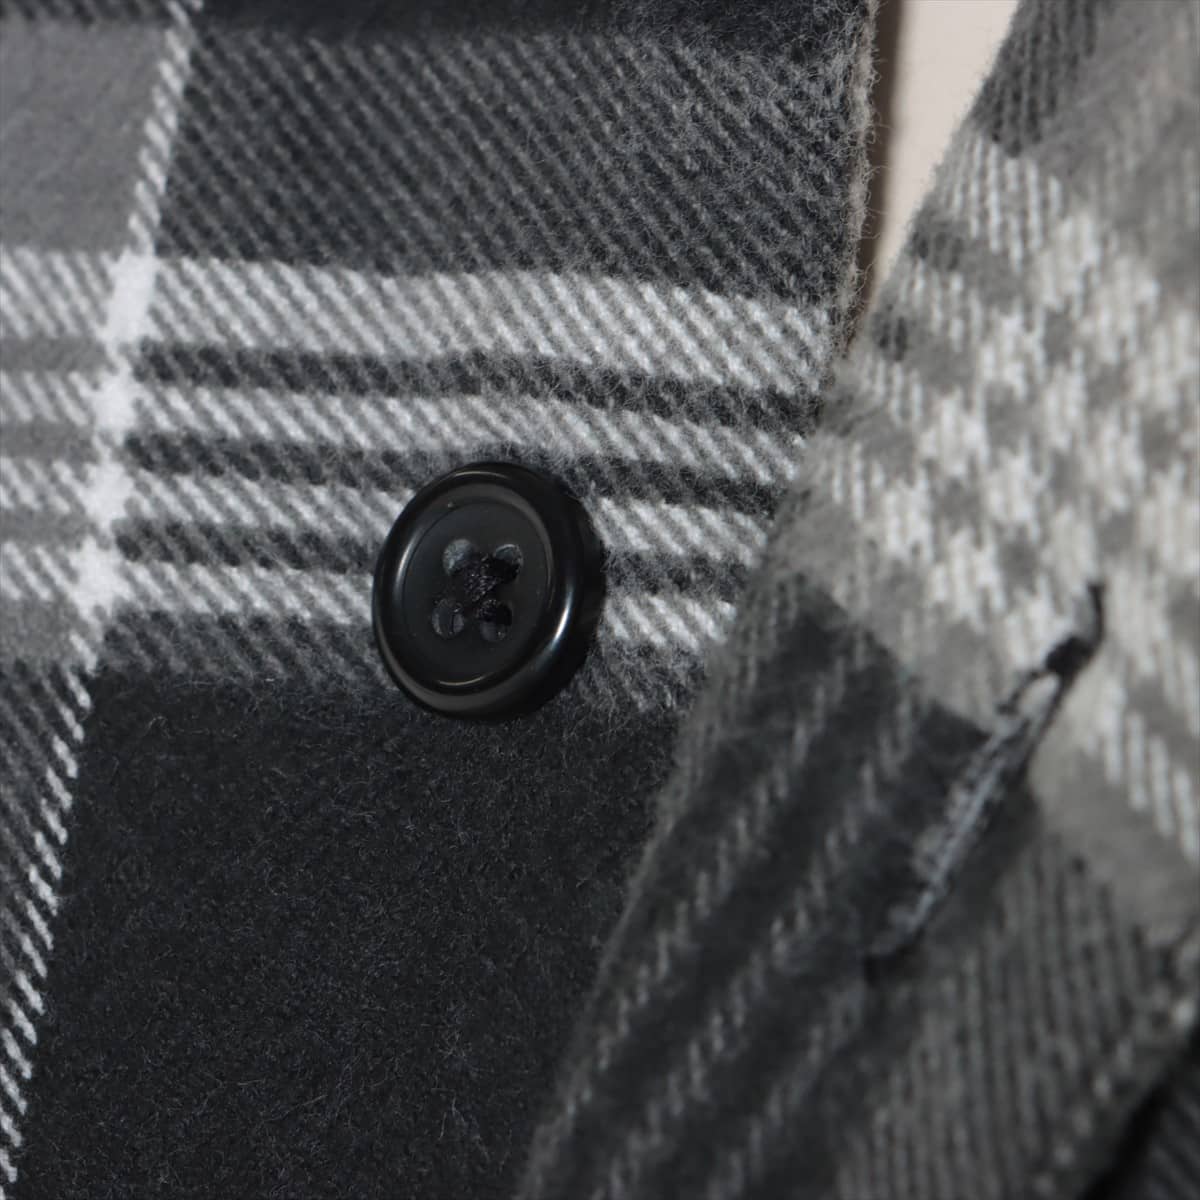 シュプリーム 21AW コットン×ポリエステル ジャケット M メンズ ブラック×グレー  Faux Fur Collar Flannel Shirt 全体に毛羽立ちあり